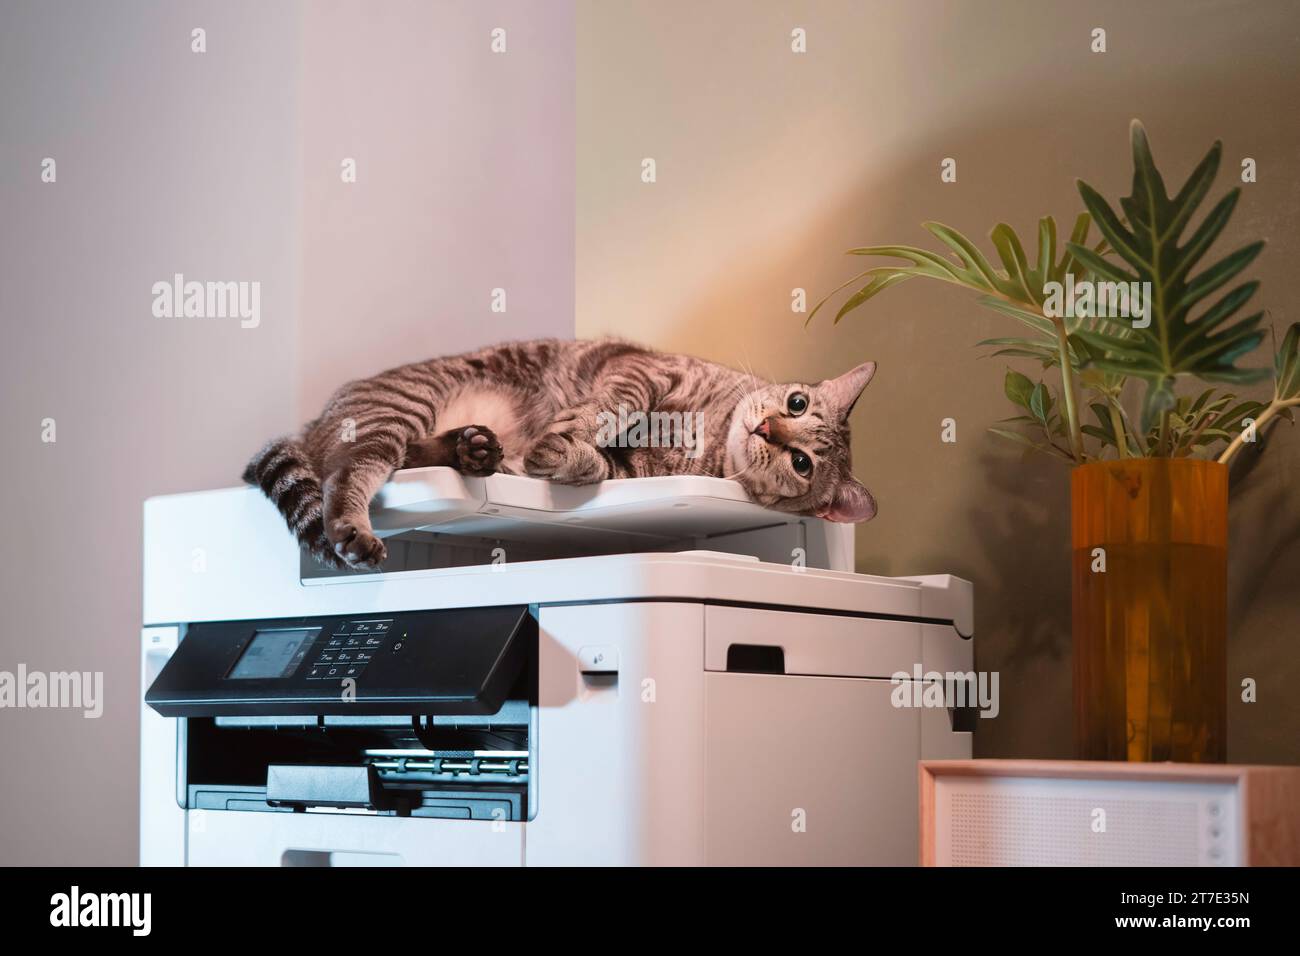 Tabby-Katzen liegen auf einem Multifunktions-Laserdrucker in Home-Office-Dokumenten oder Papieren. Stockfoto